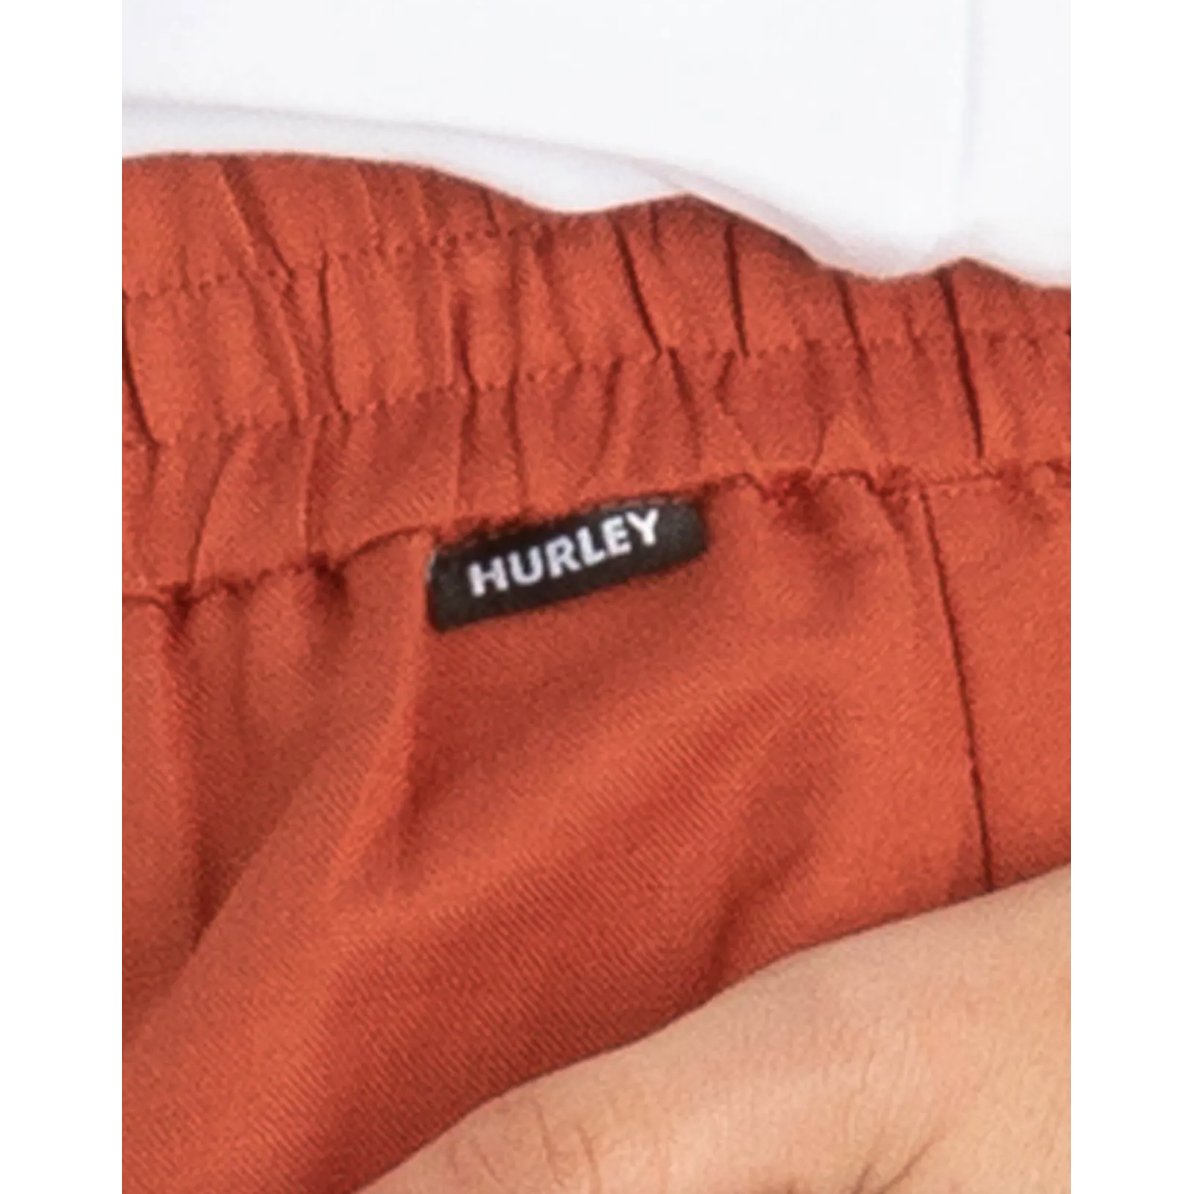 Hurley - Camilla Short - Velocity 21